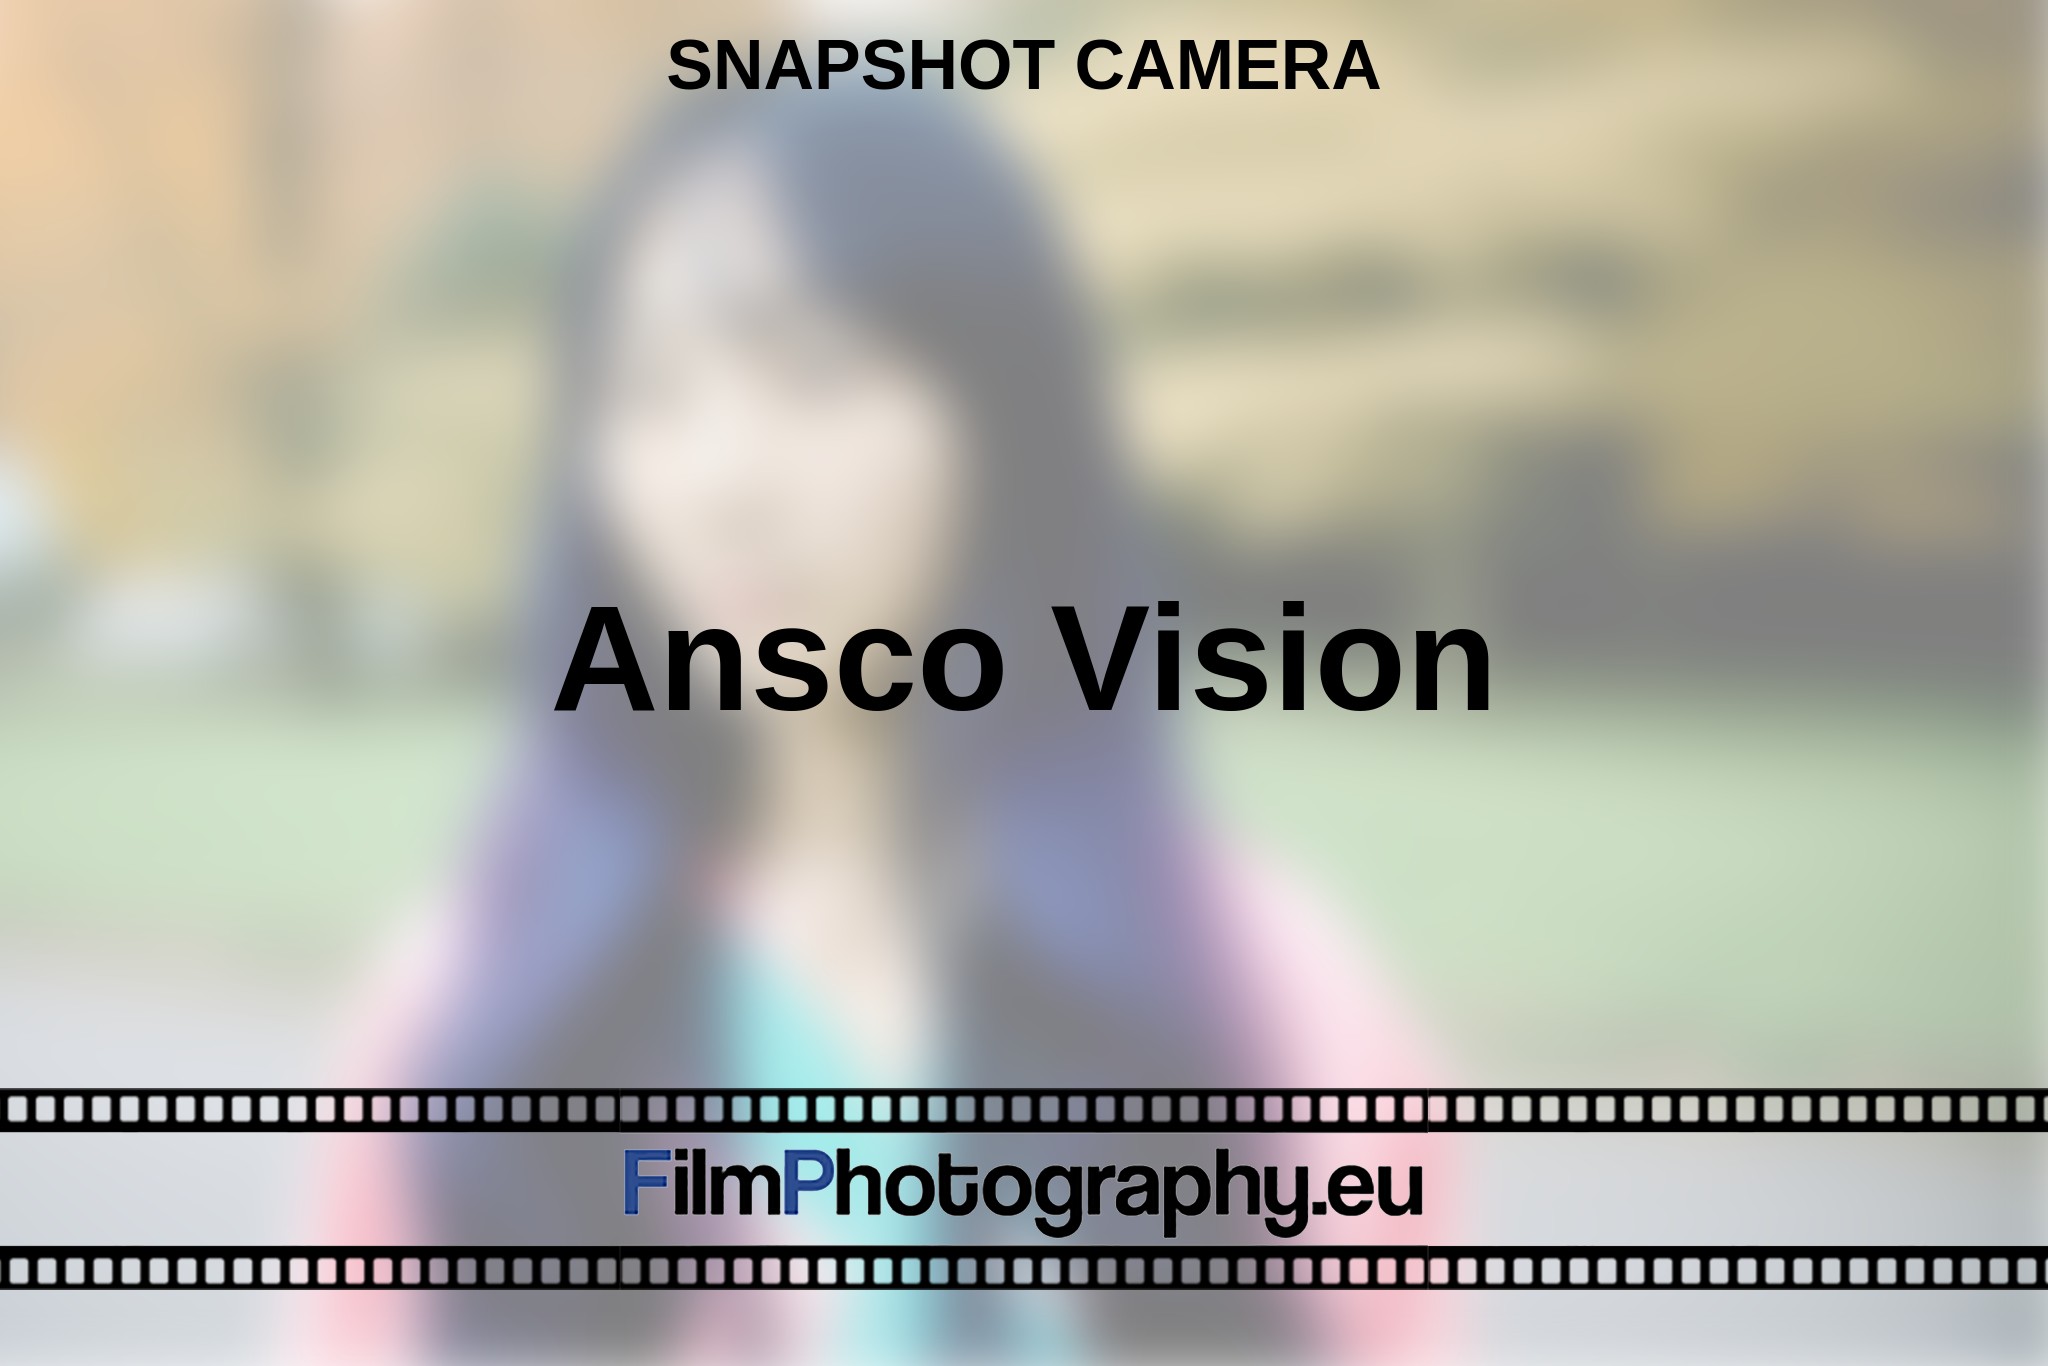 ansco-vision-snapshot-camera-en-bnv.jpg